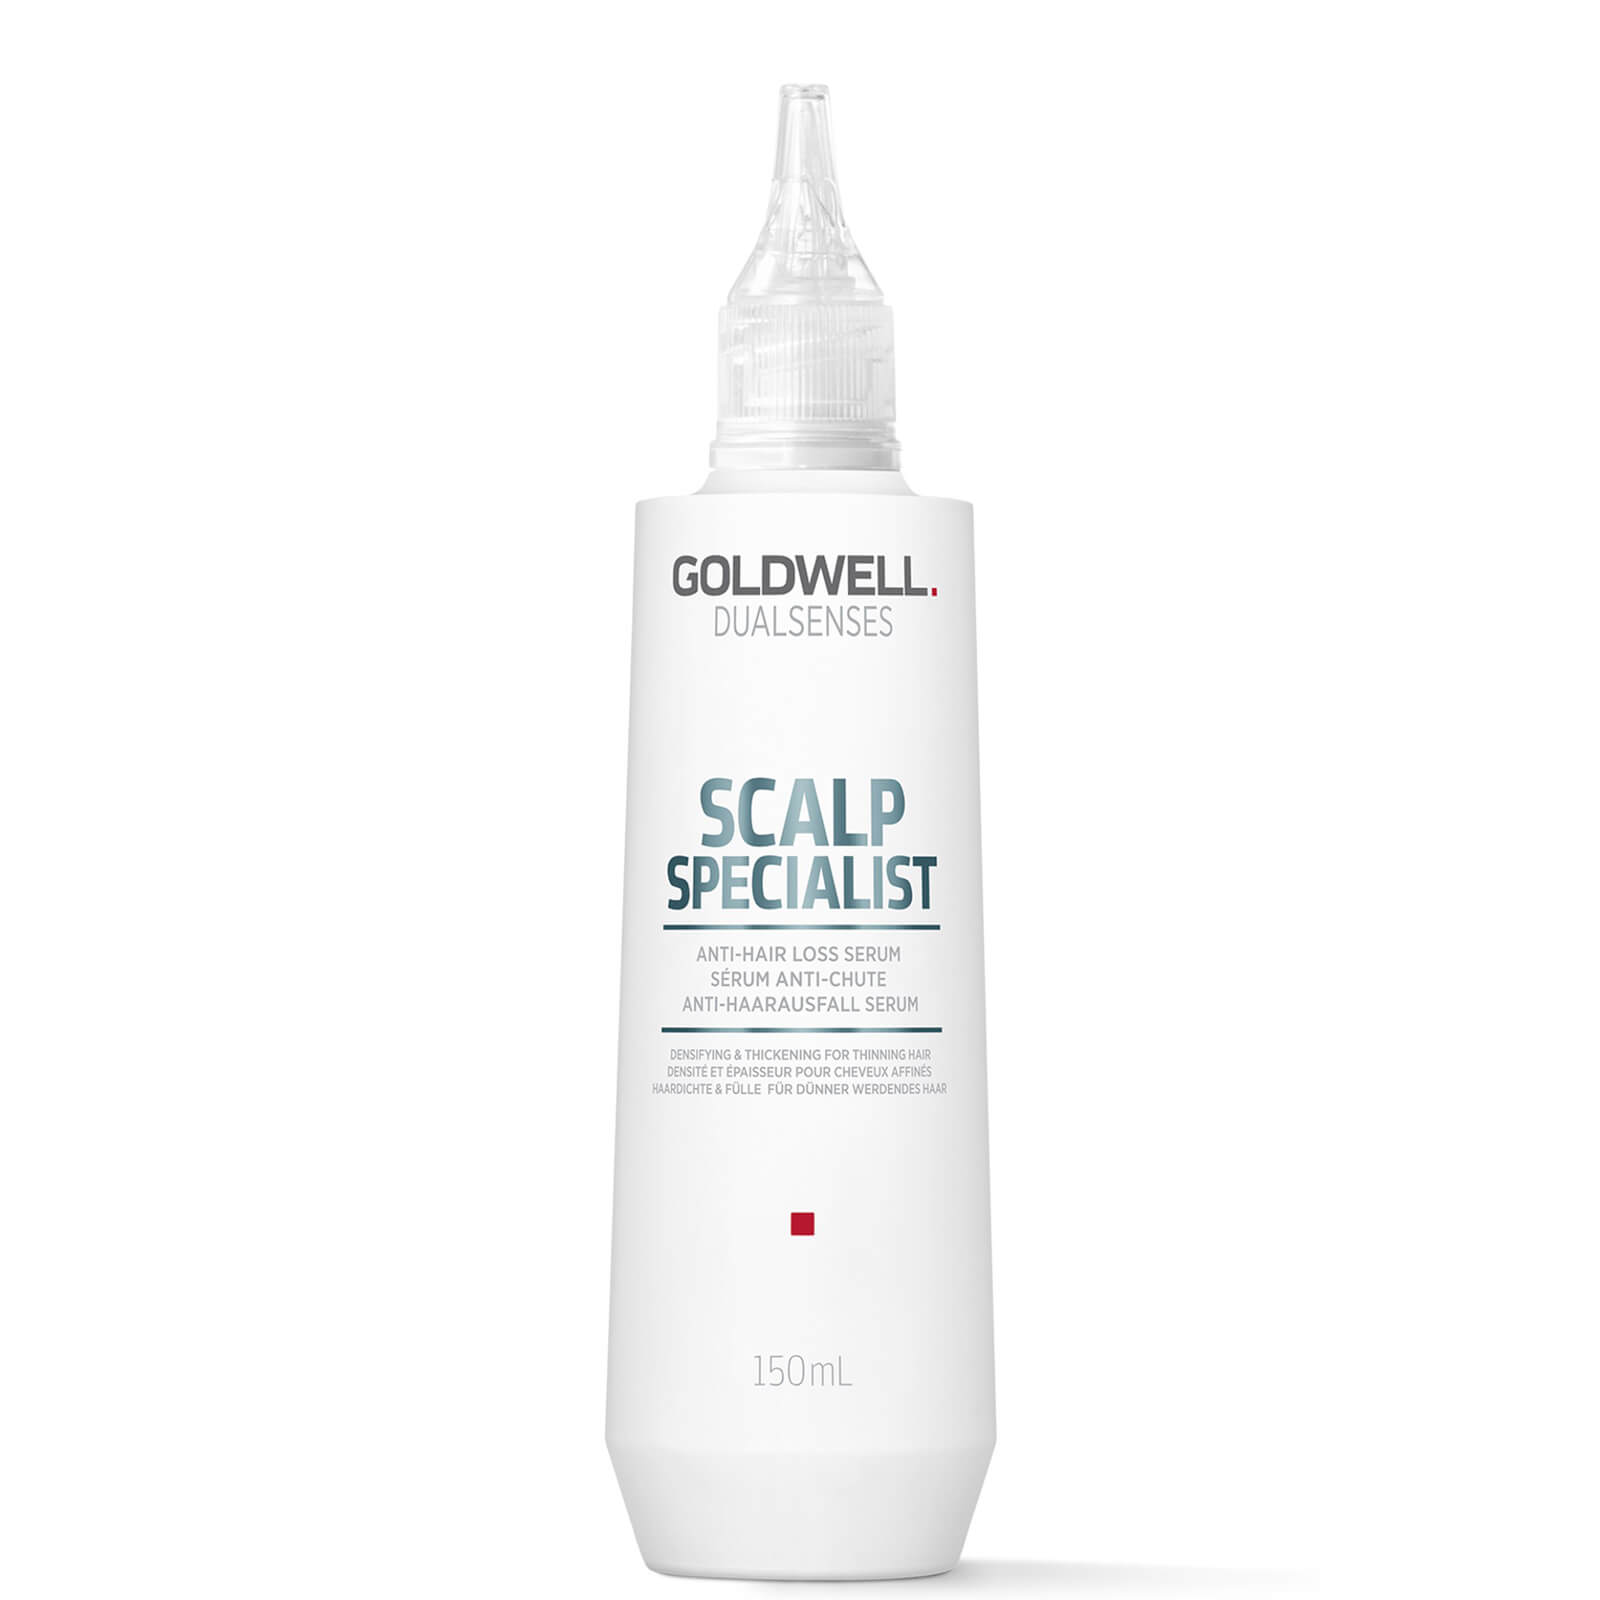 Goldwell Dualsenses Scalp Specialist Anti-hair Loss Serum 150ml In White